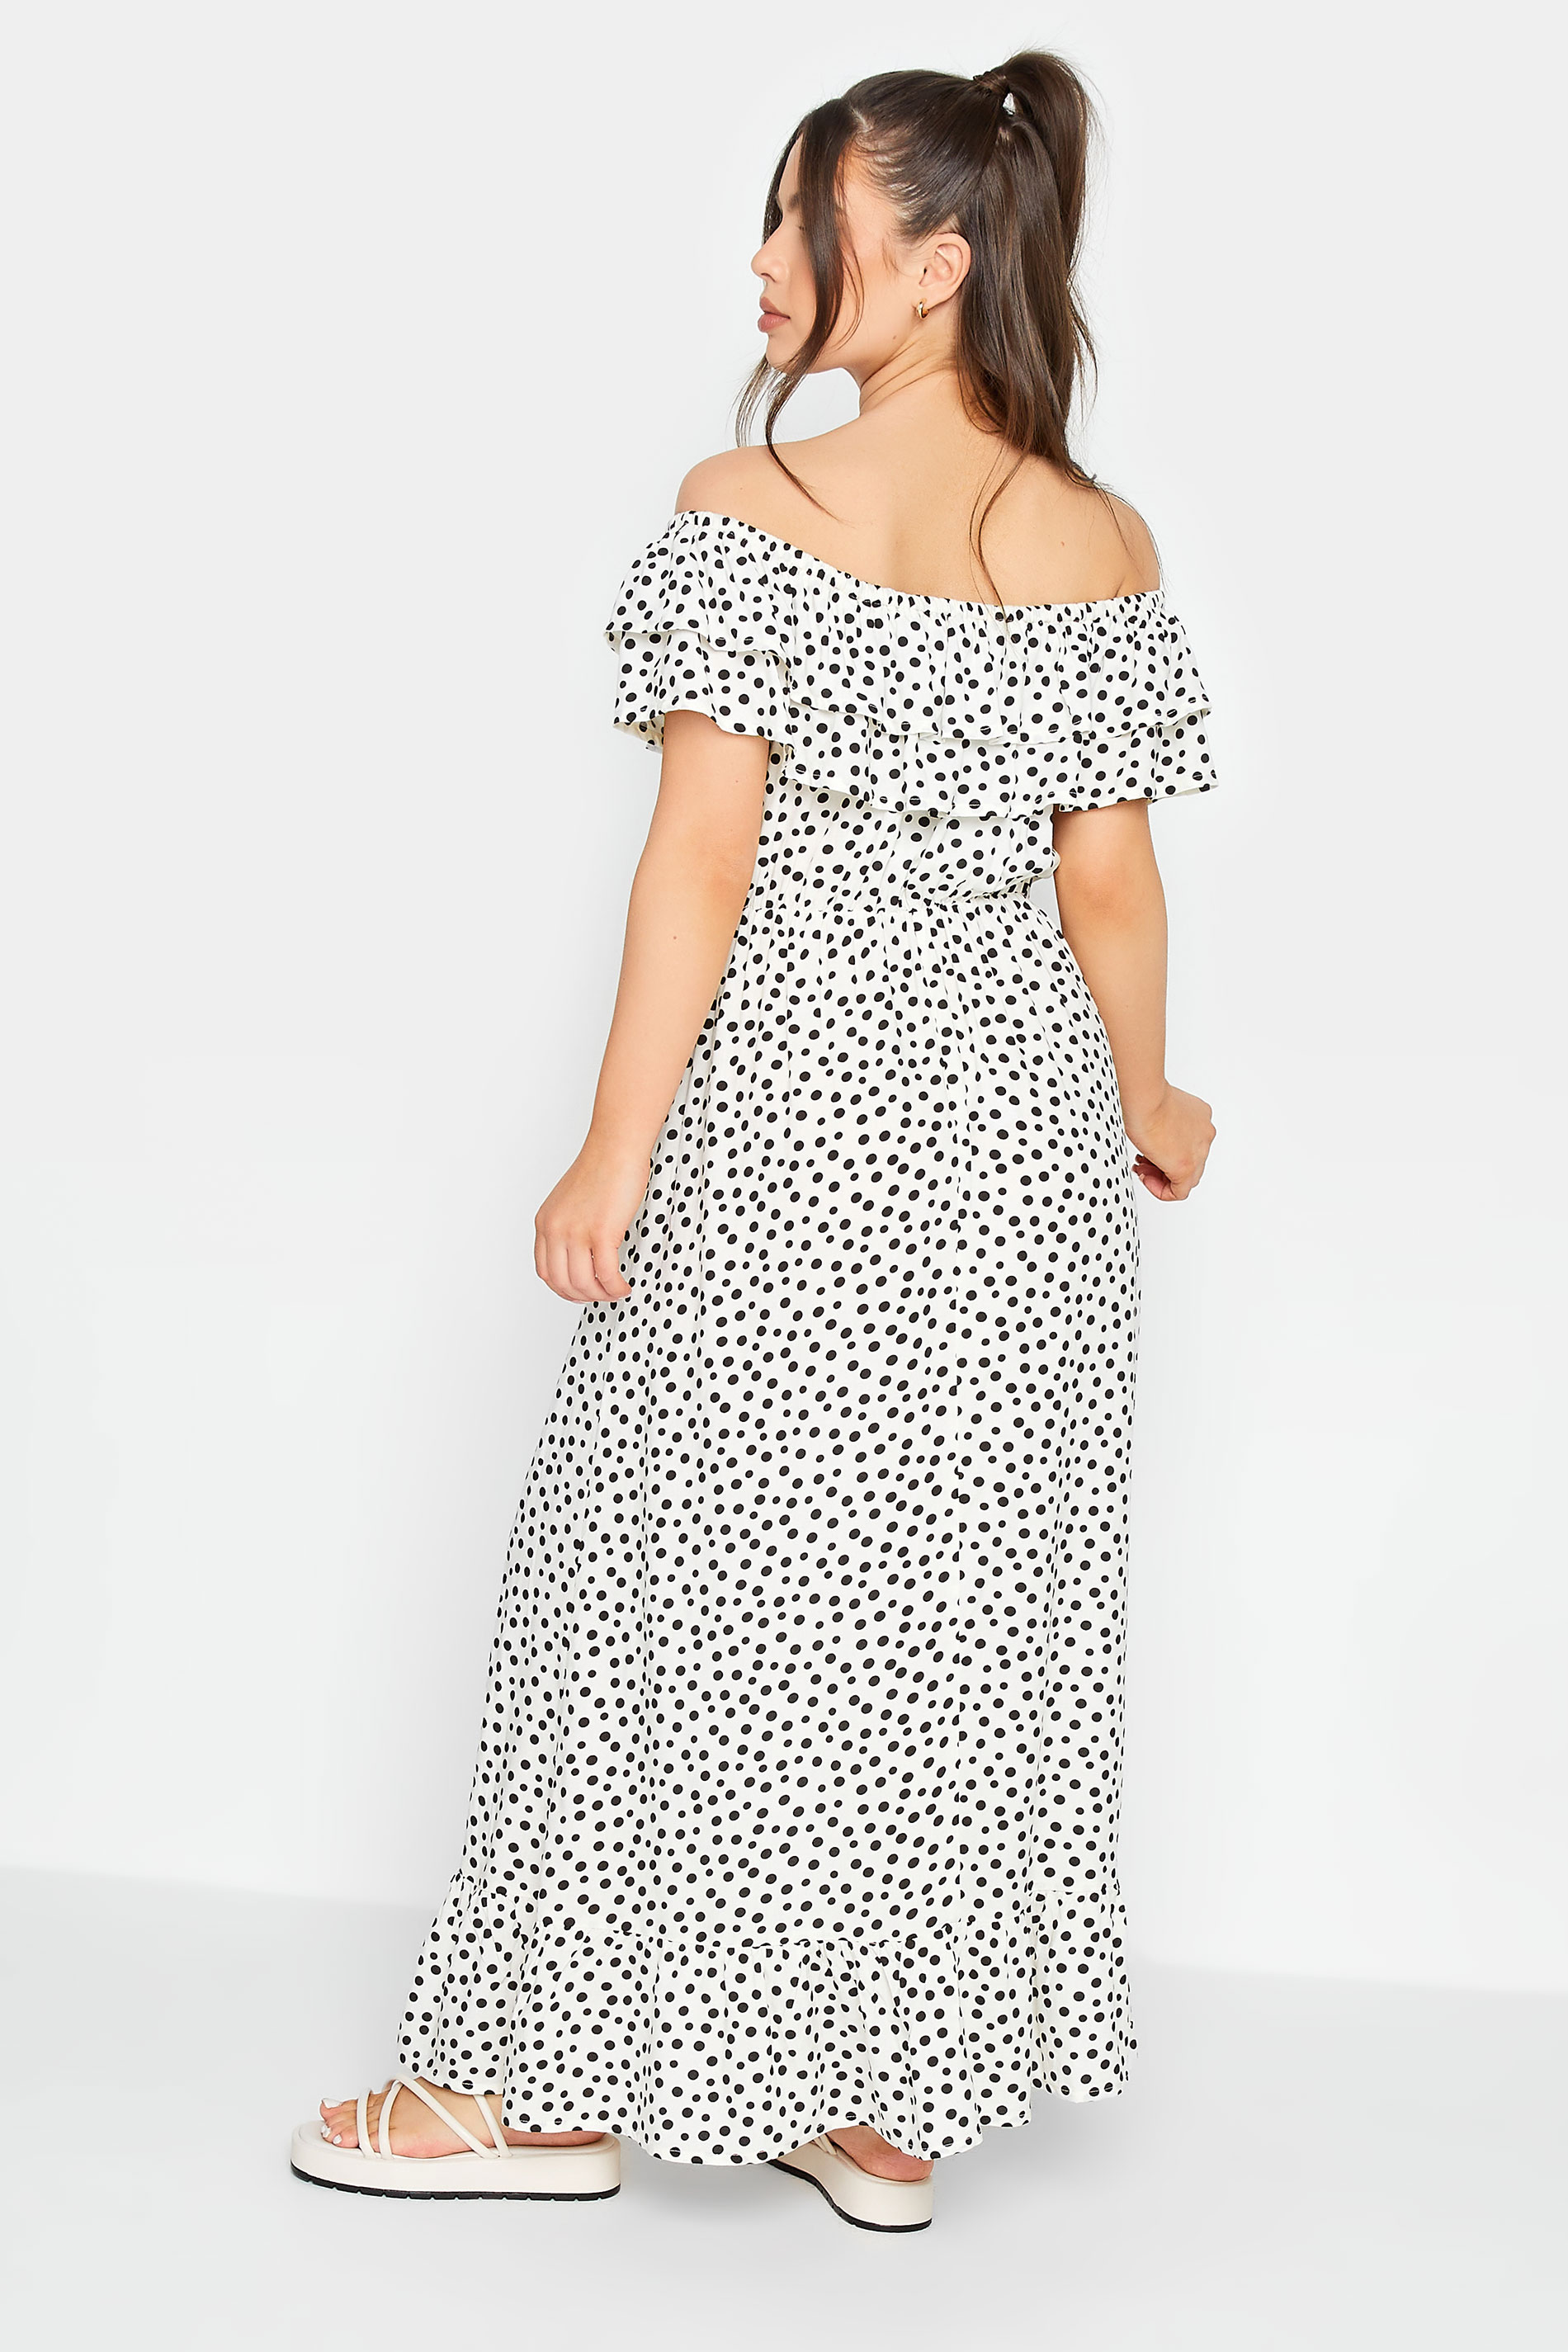 PixieGirl White Polka Dot Frill Bardot Maxi Dress | PixieGirl 3